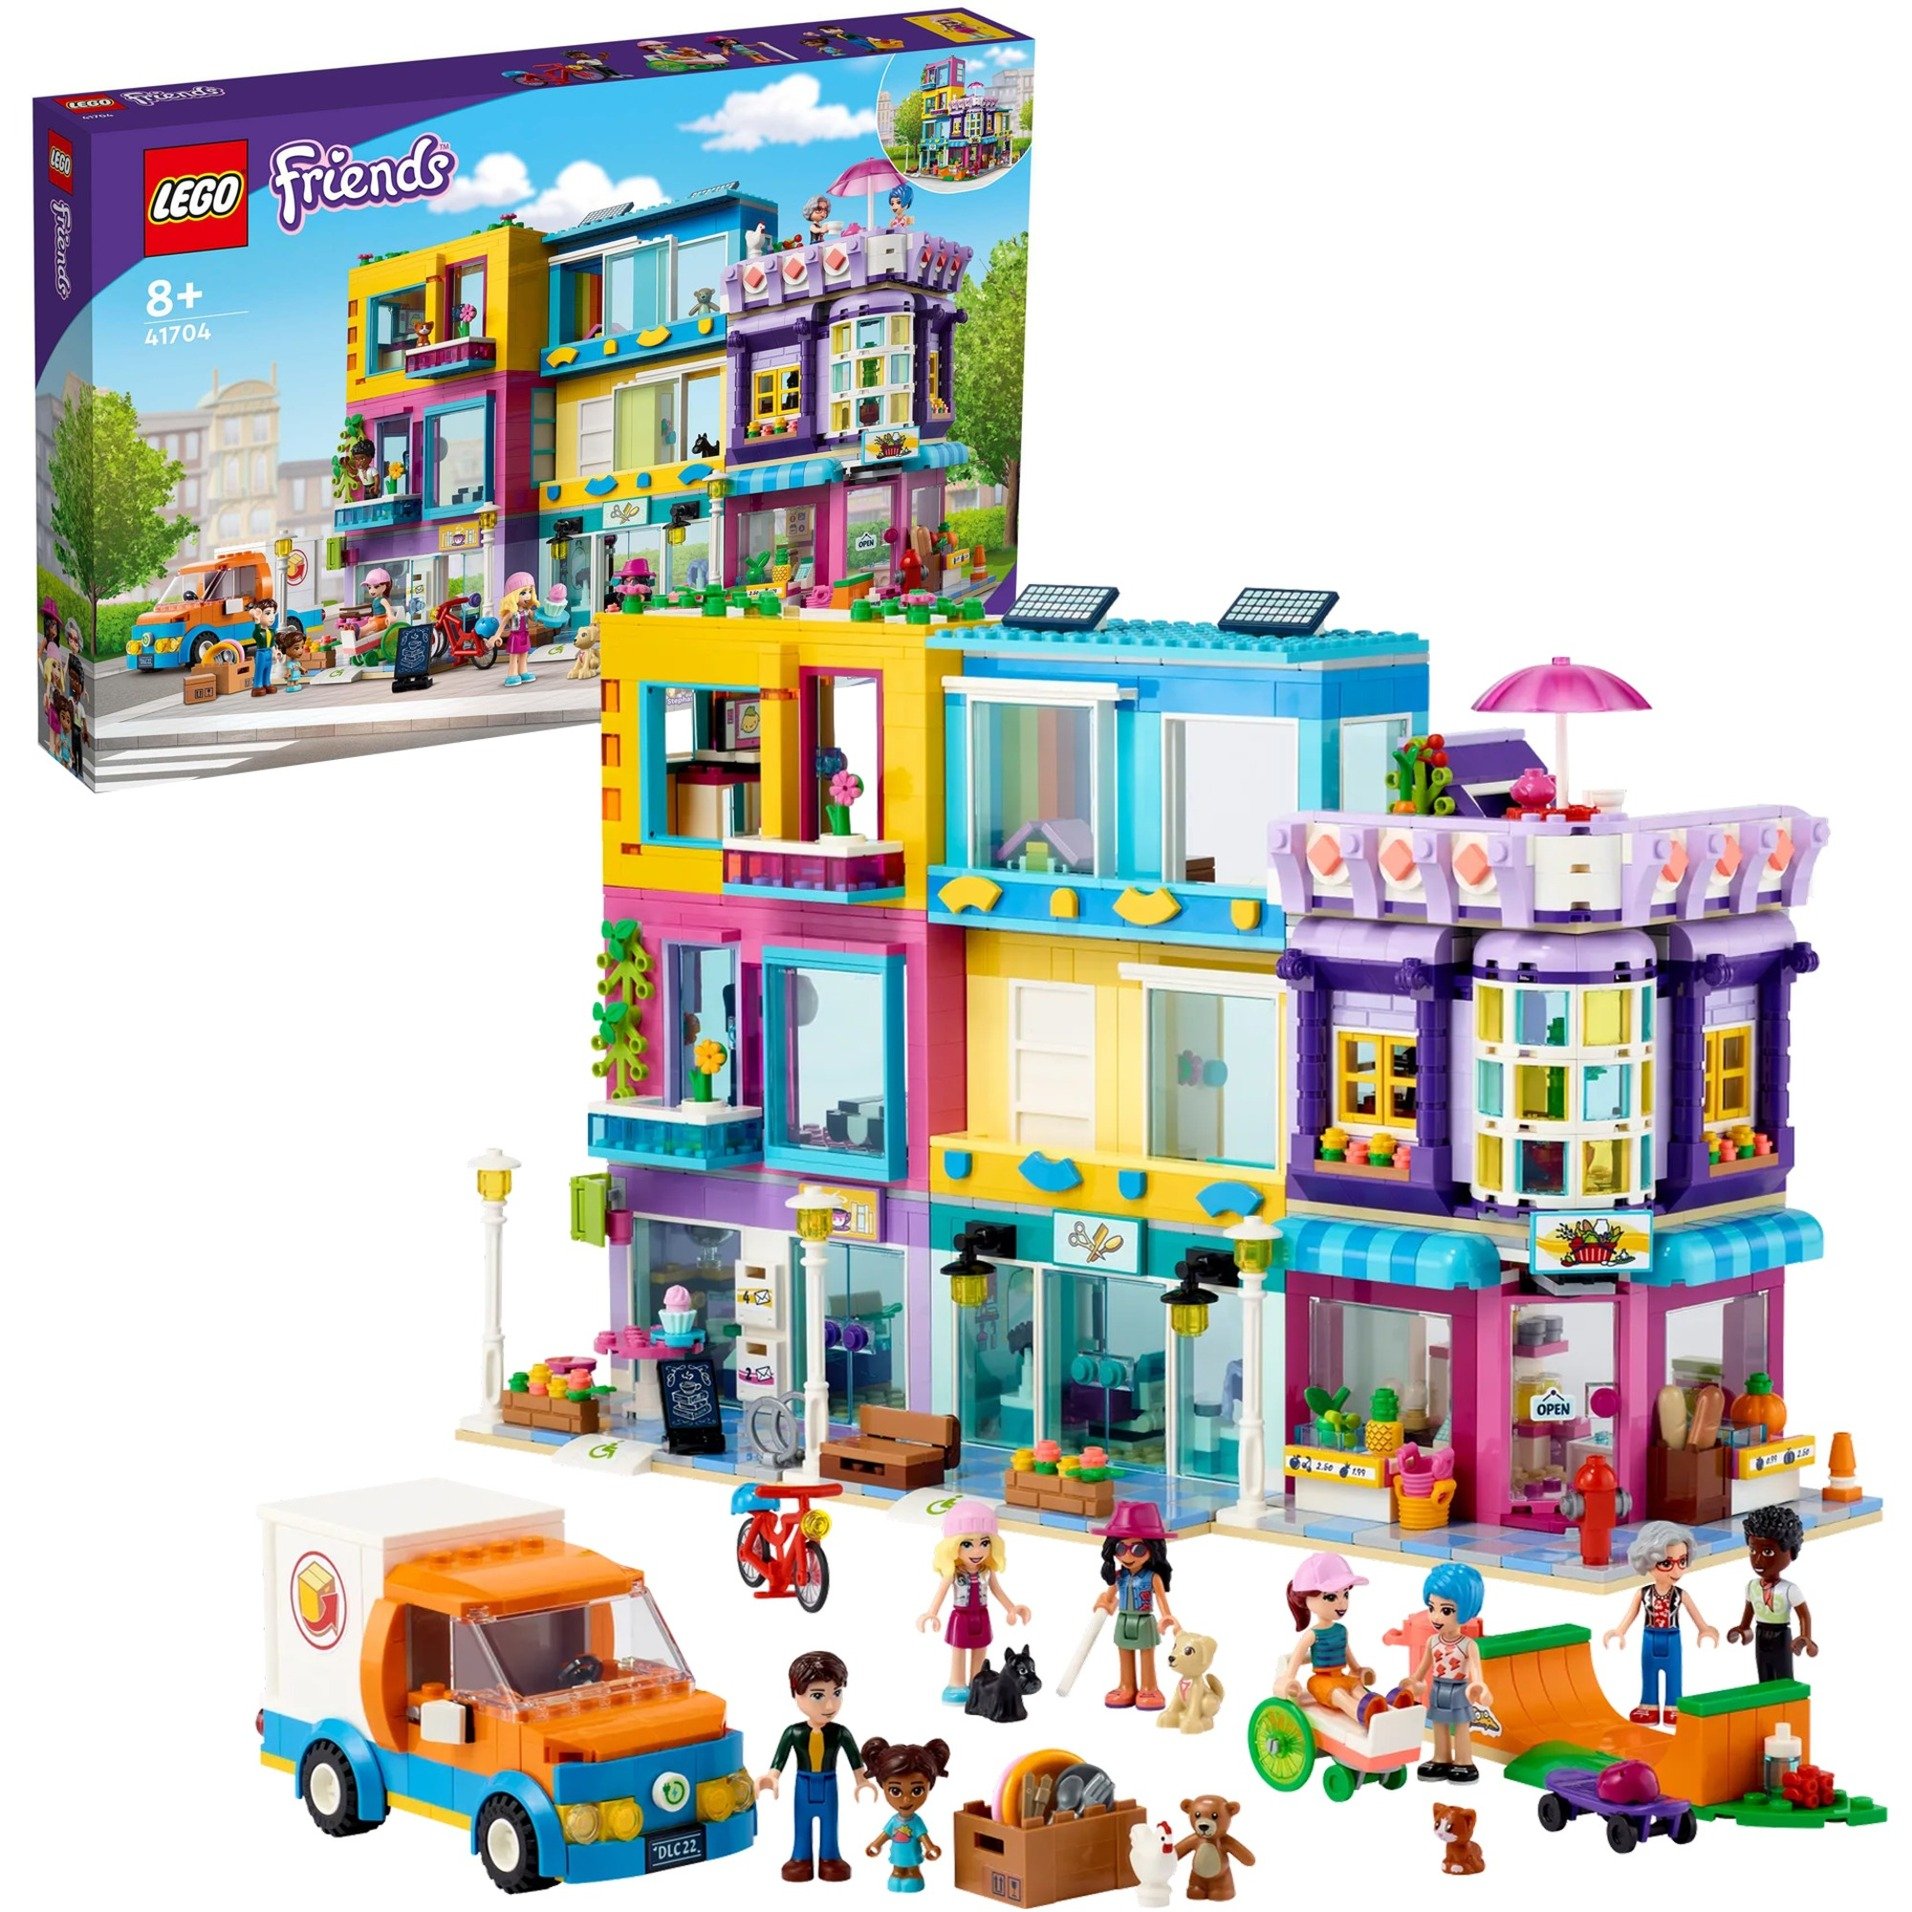 Spielzeug: Lego 41704 Friends Wohnblock in Heartlake City mit Friseursalon und Café